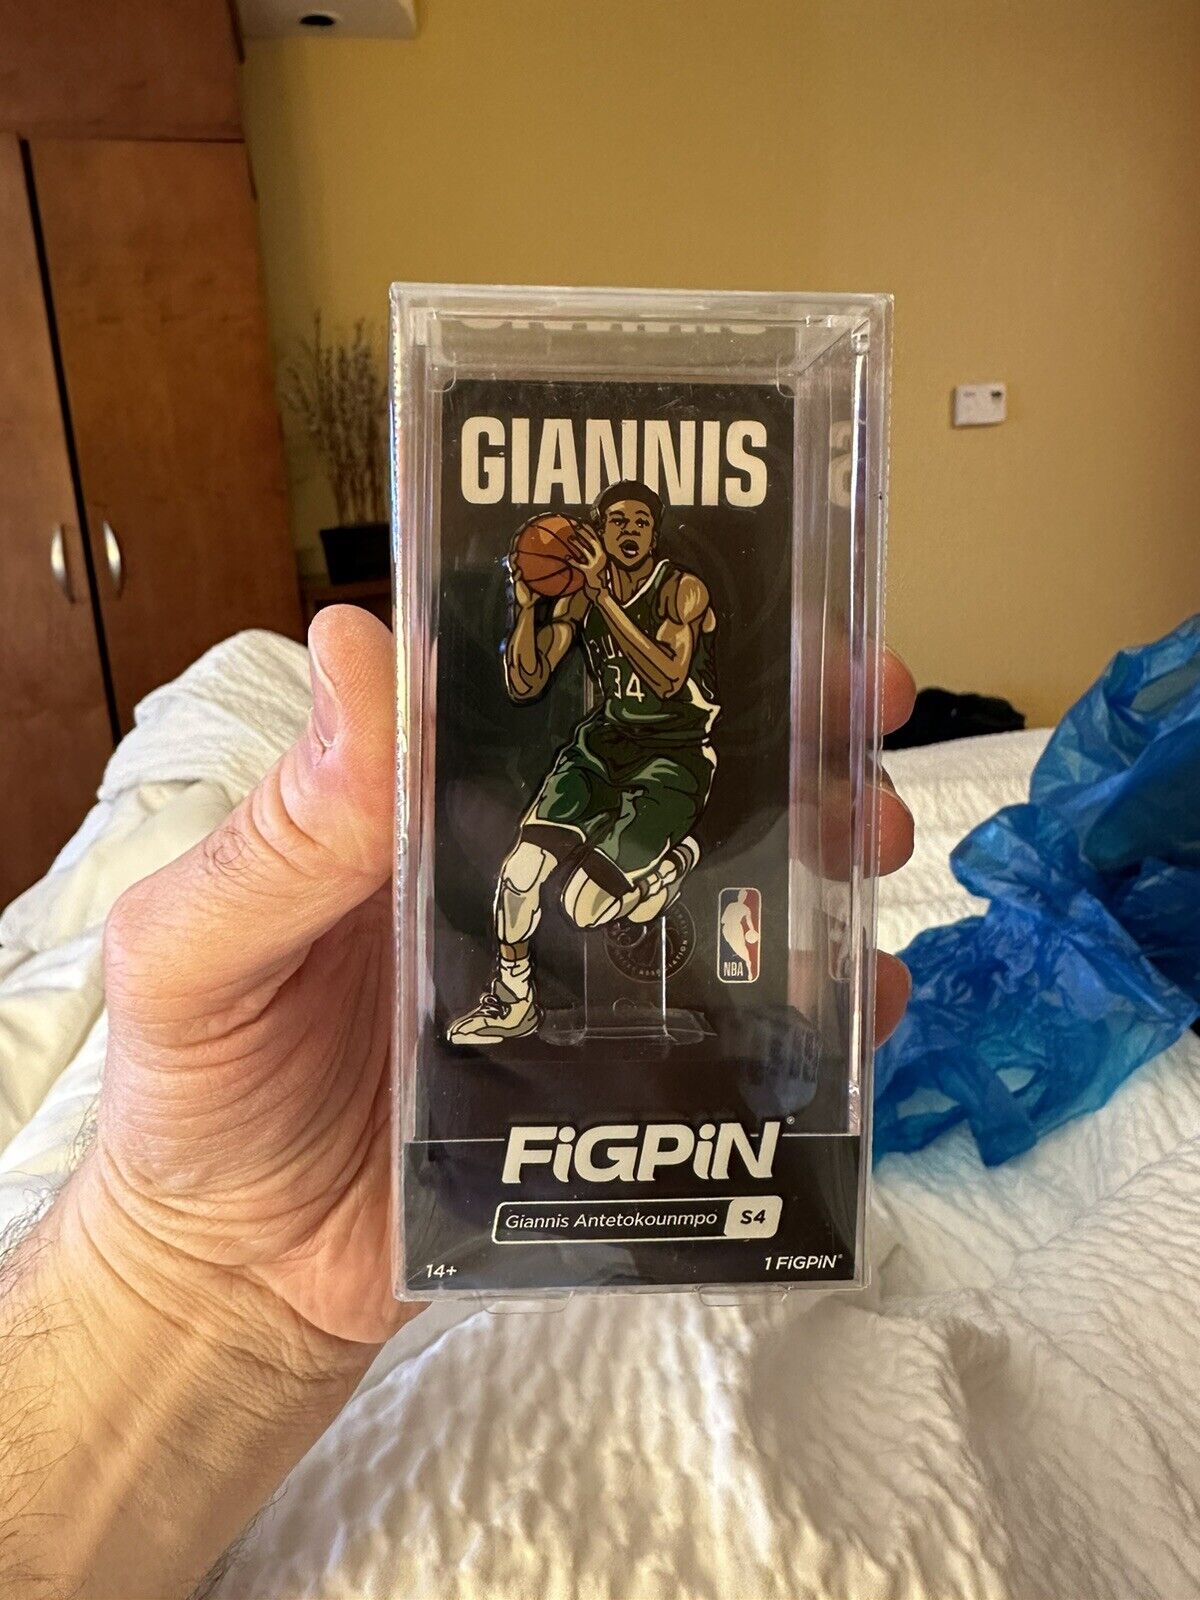 2021 NBA FigPin NBA Giannis Antetokounmpo #S4 New in Box. Milwaukee Bucks